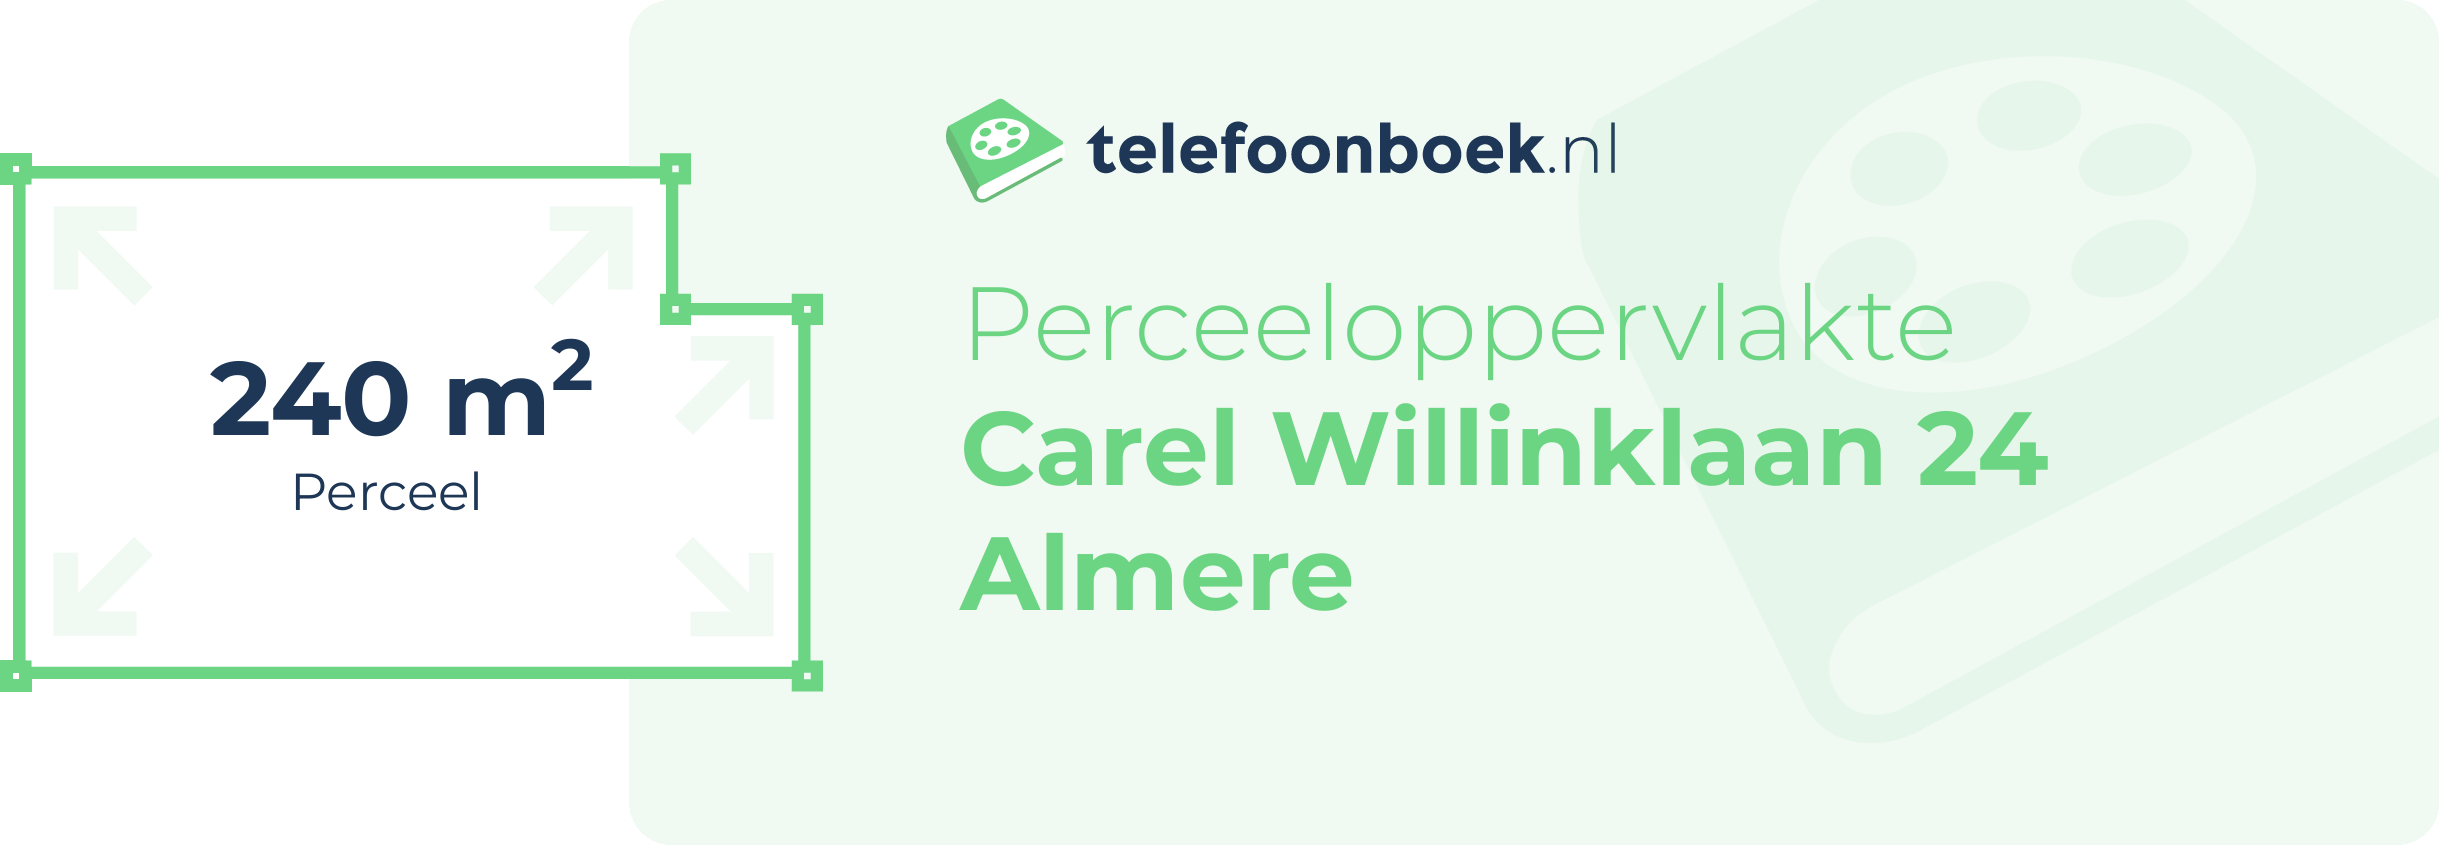 Perceeloppervlakte Carel Willinklaan 24 Almere